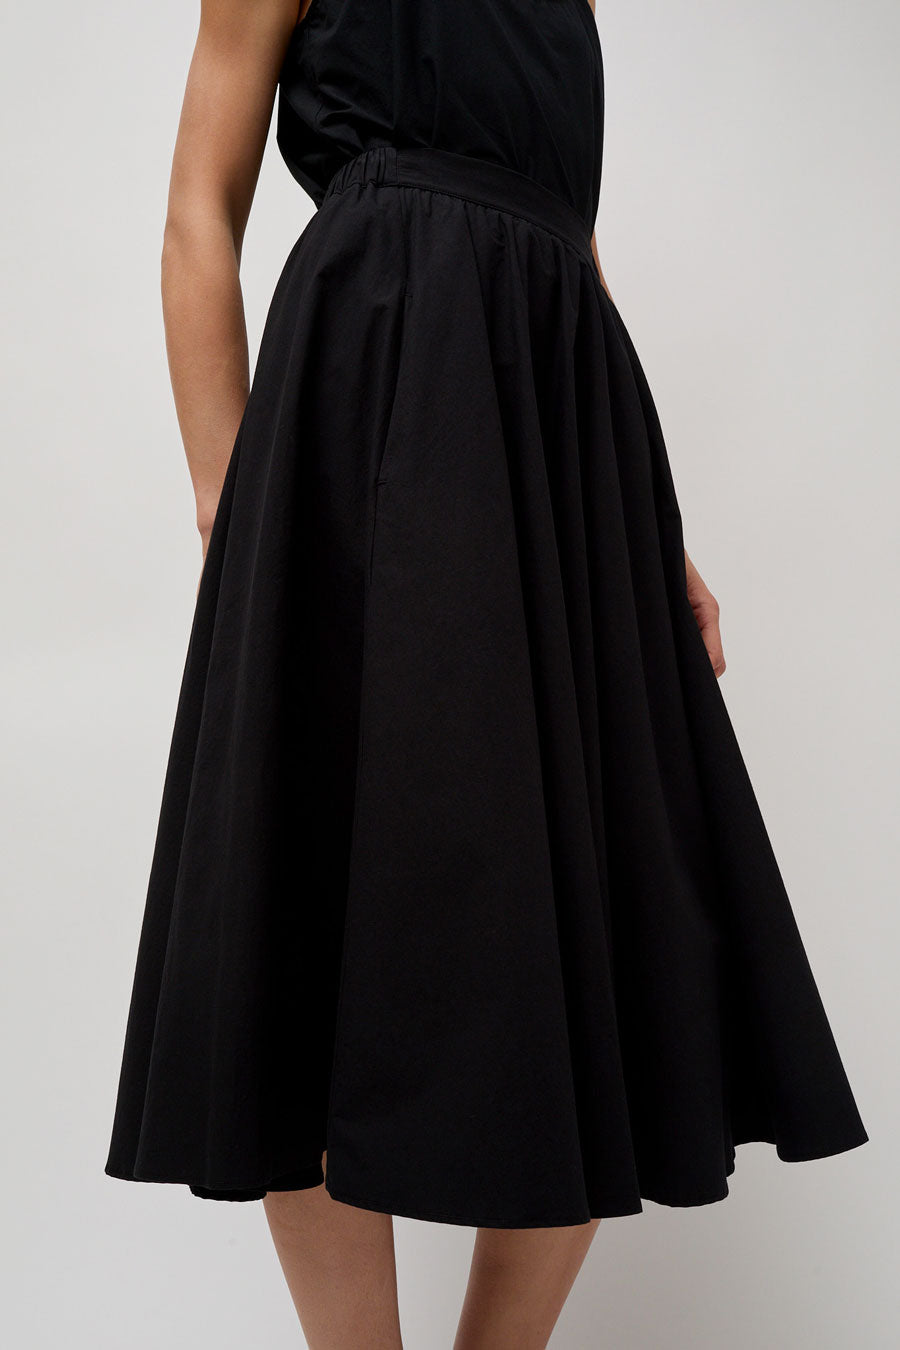 Modern Weaving Relaxed Circle Skirt in Black